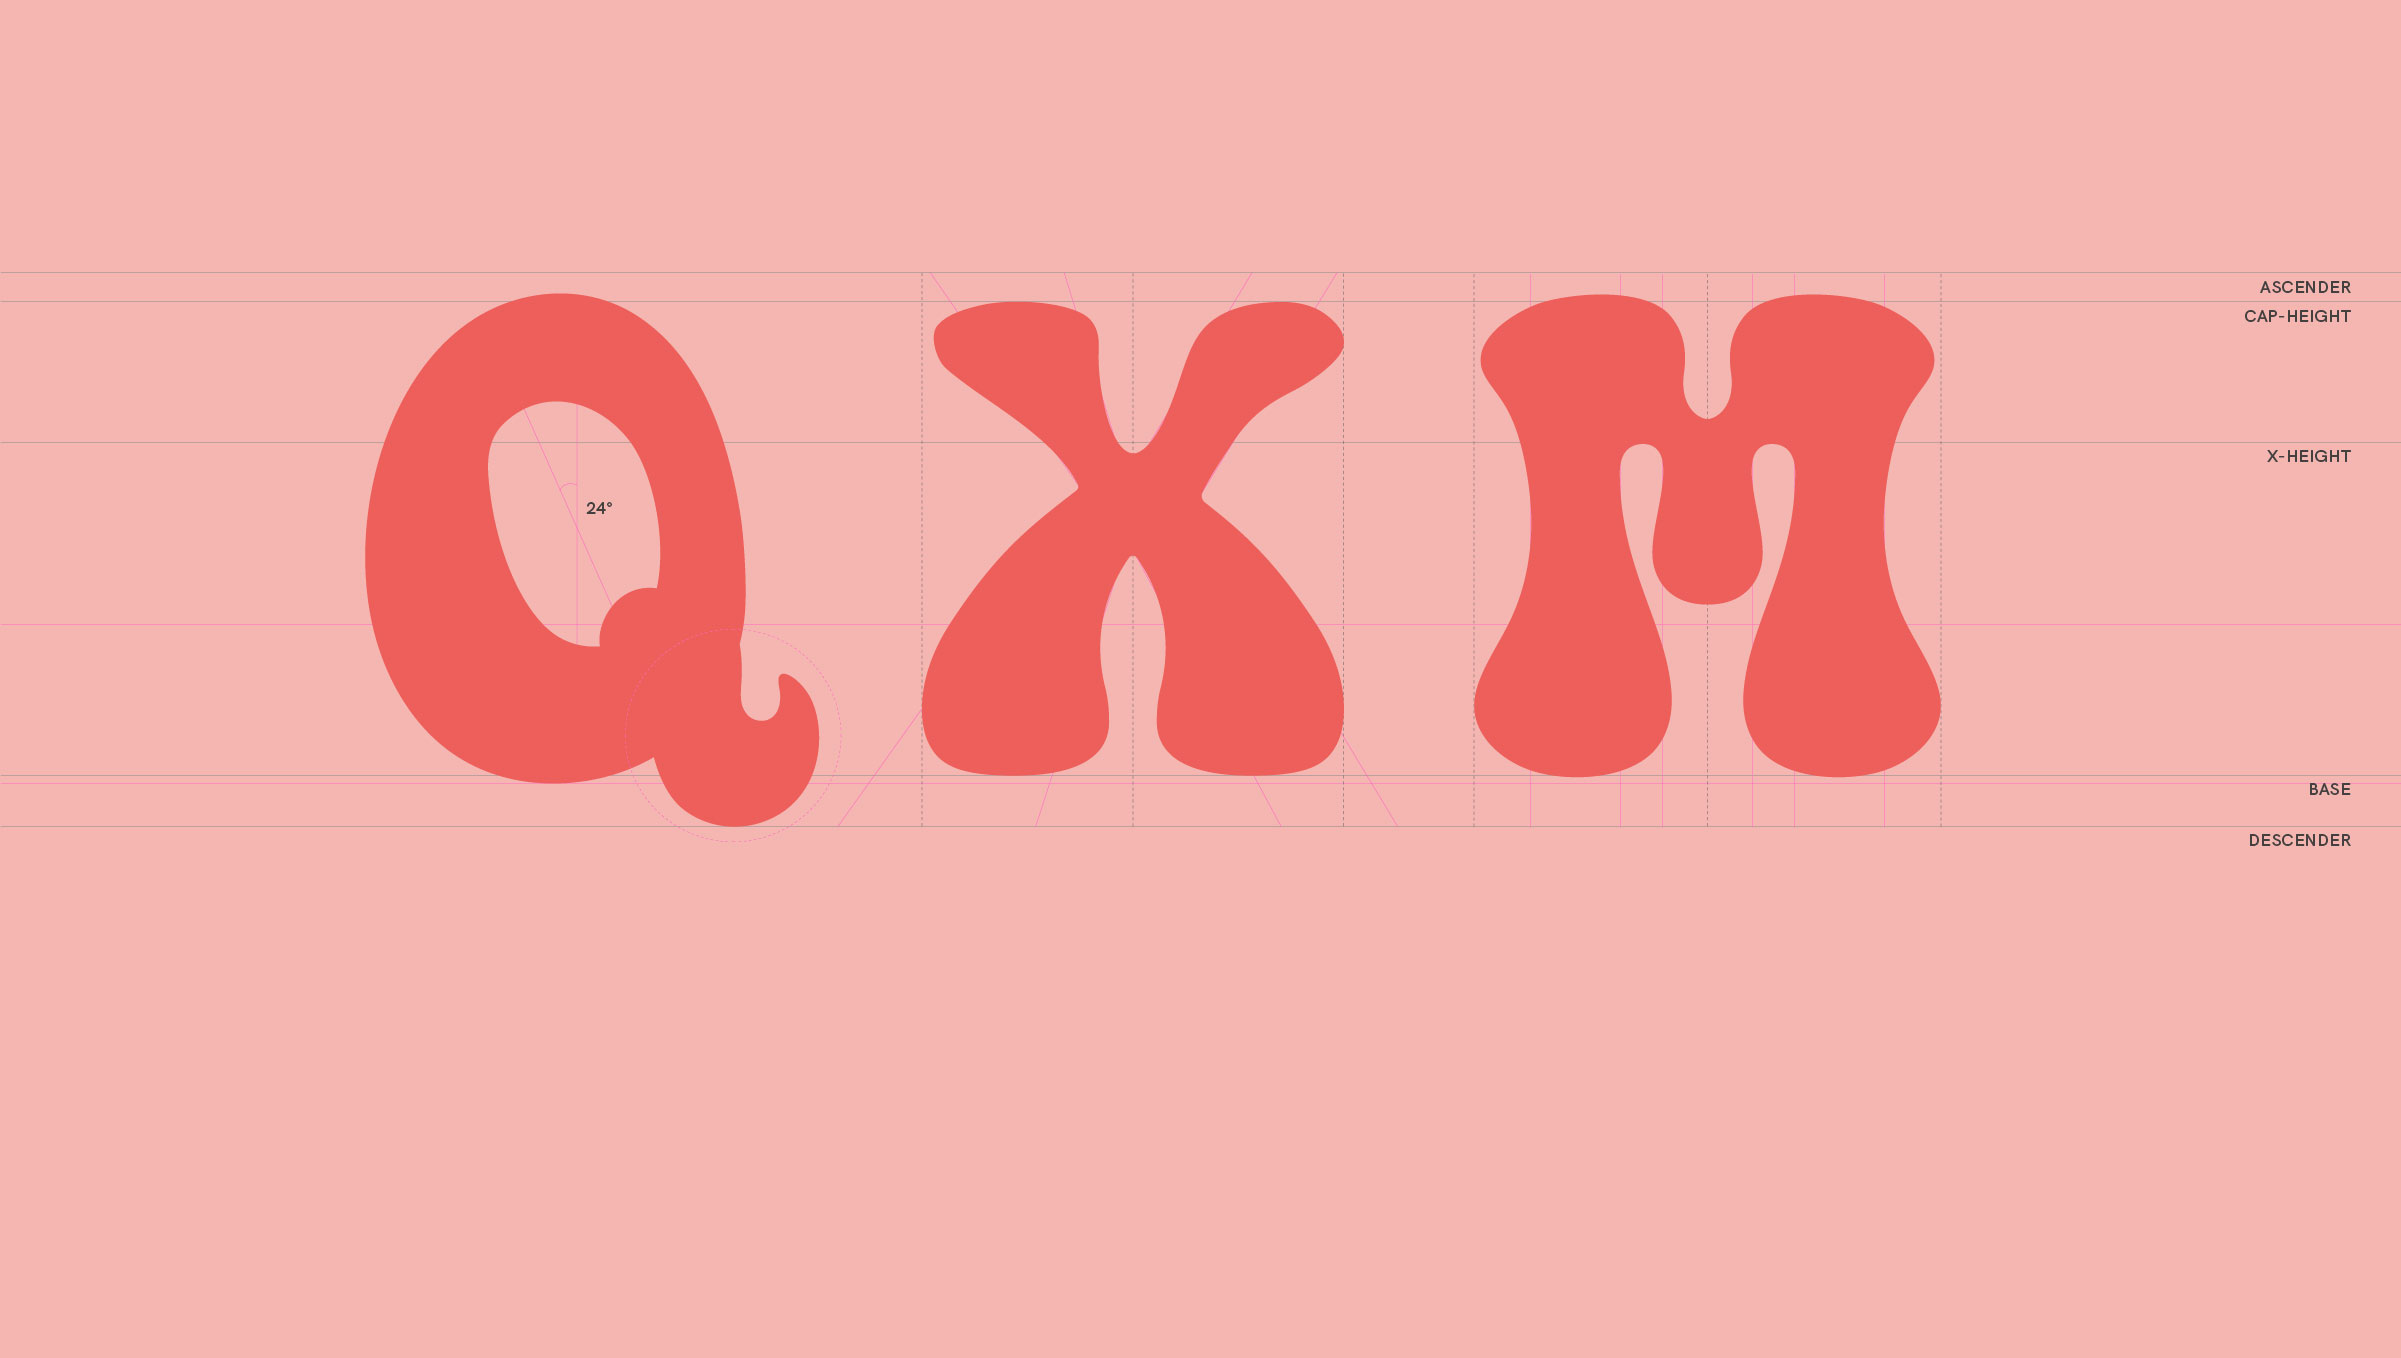 vilavilacola brand typeface design